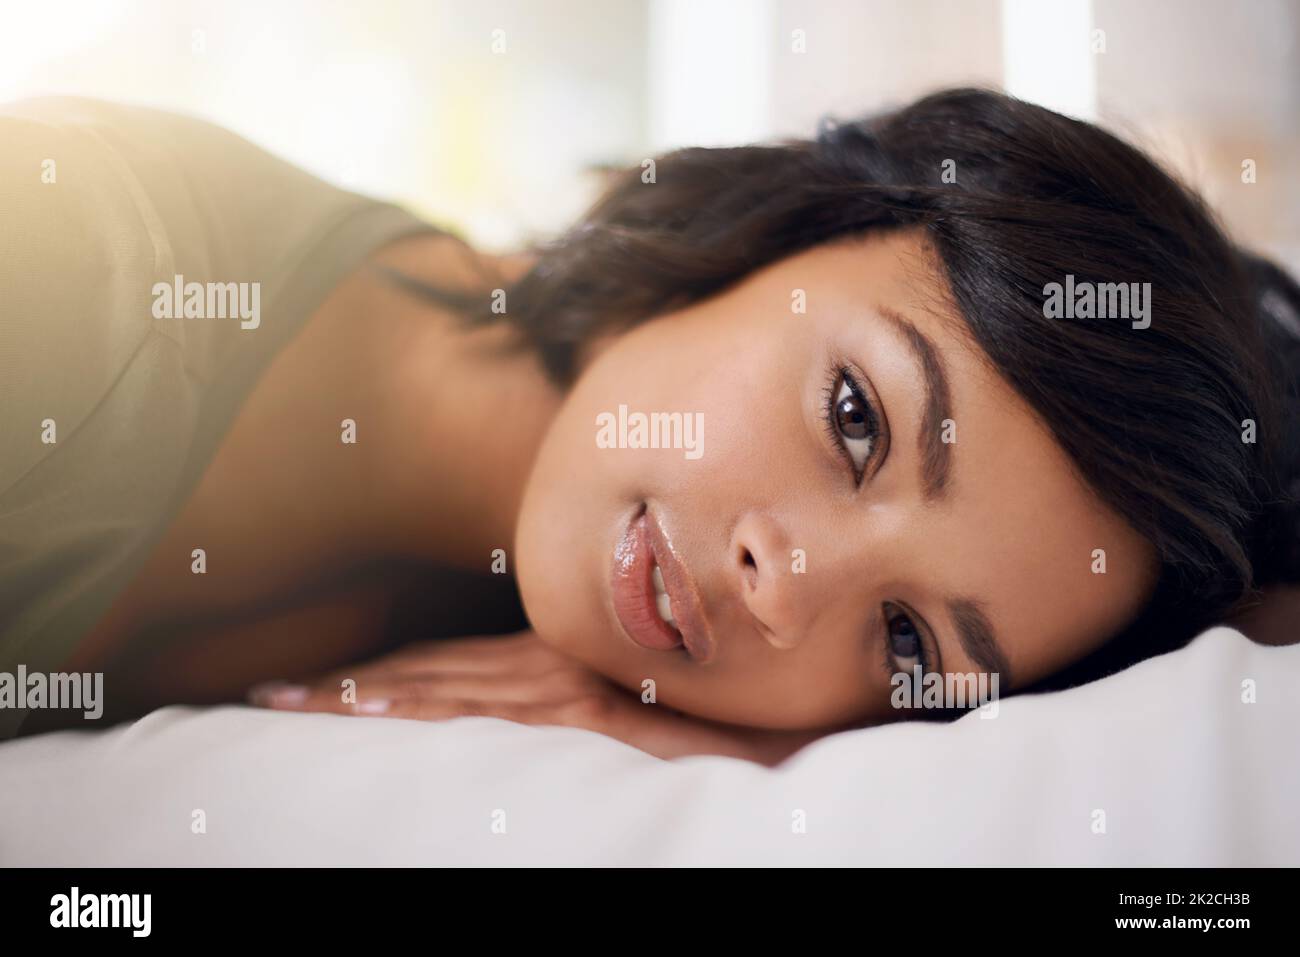 Zeit ist kostbar, vergeudet sie klug. Porträt einer jungen Frau, die auf ihrem Bett liegt. Stockfoto